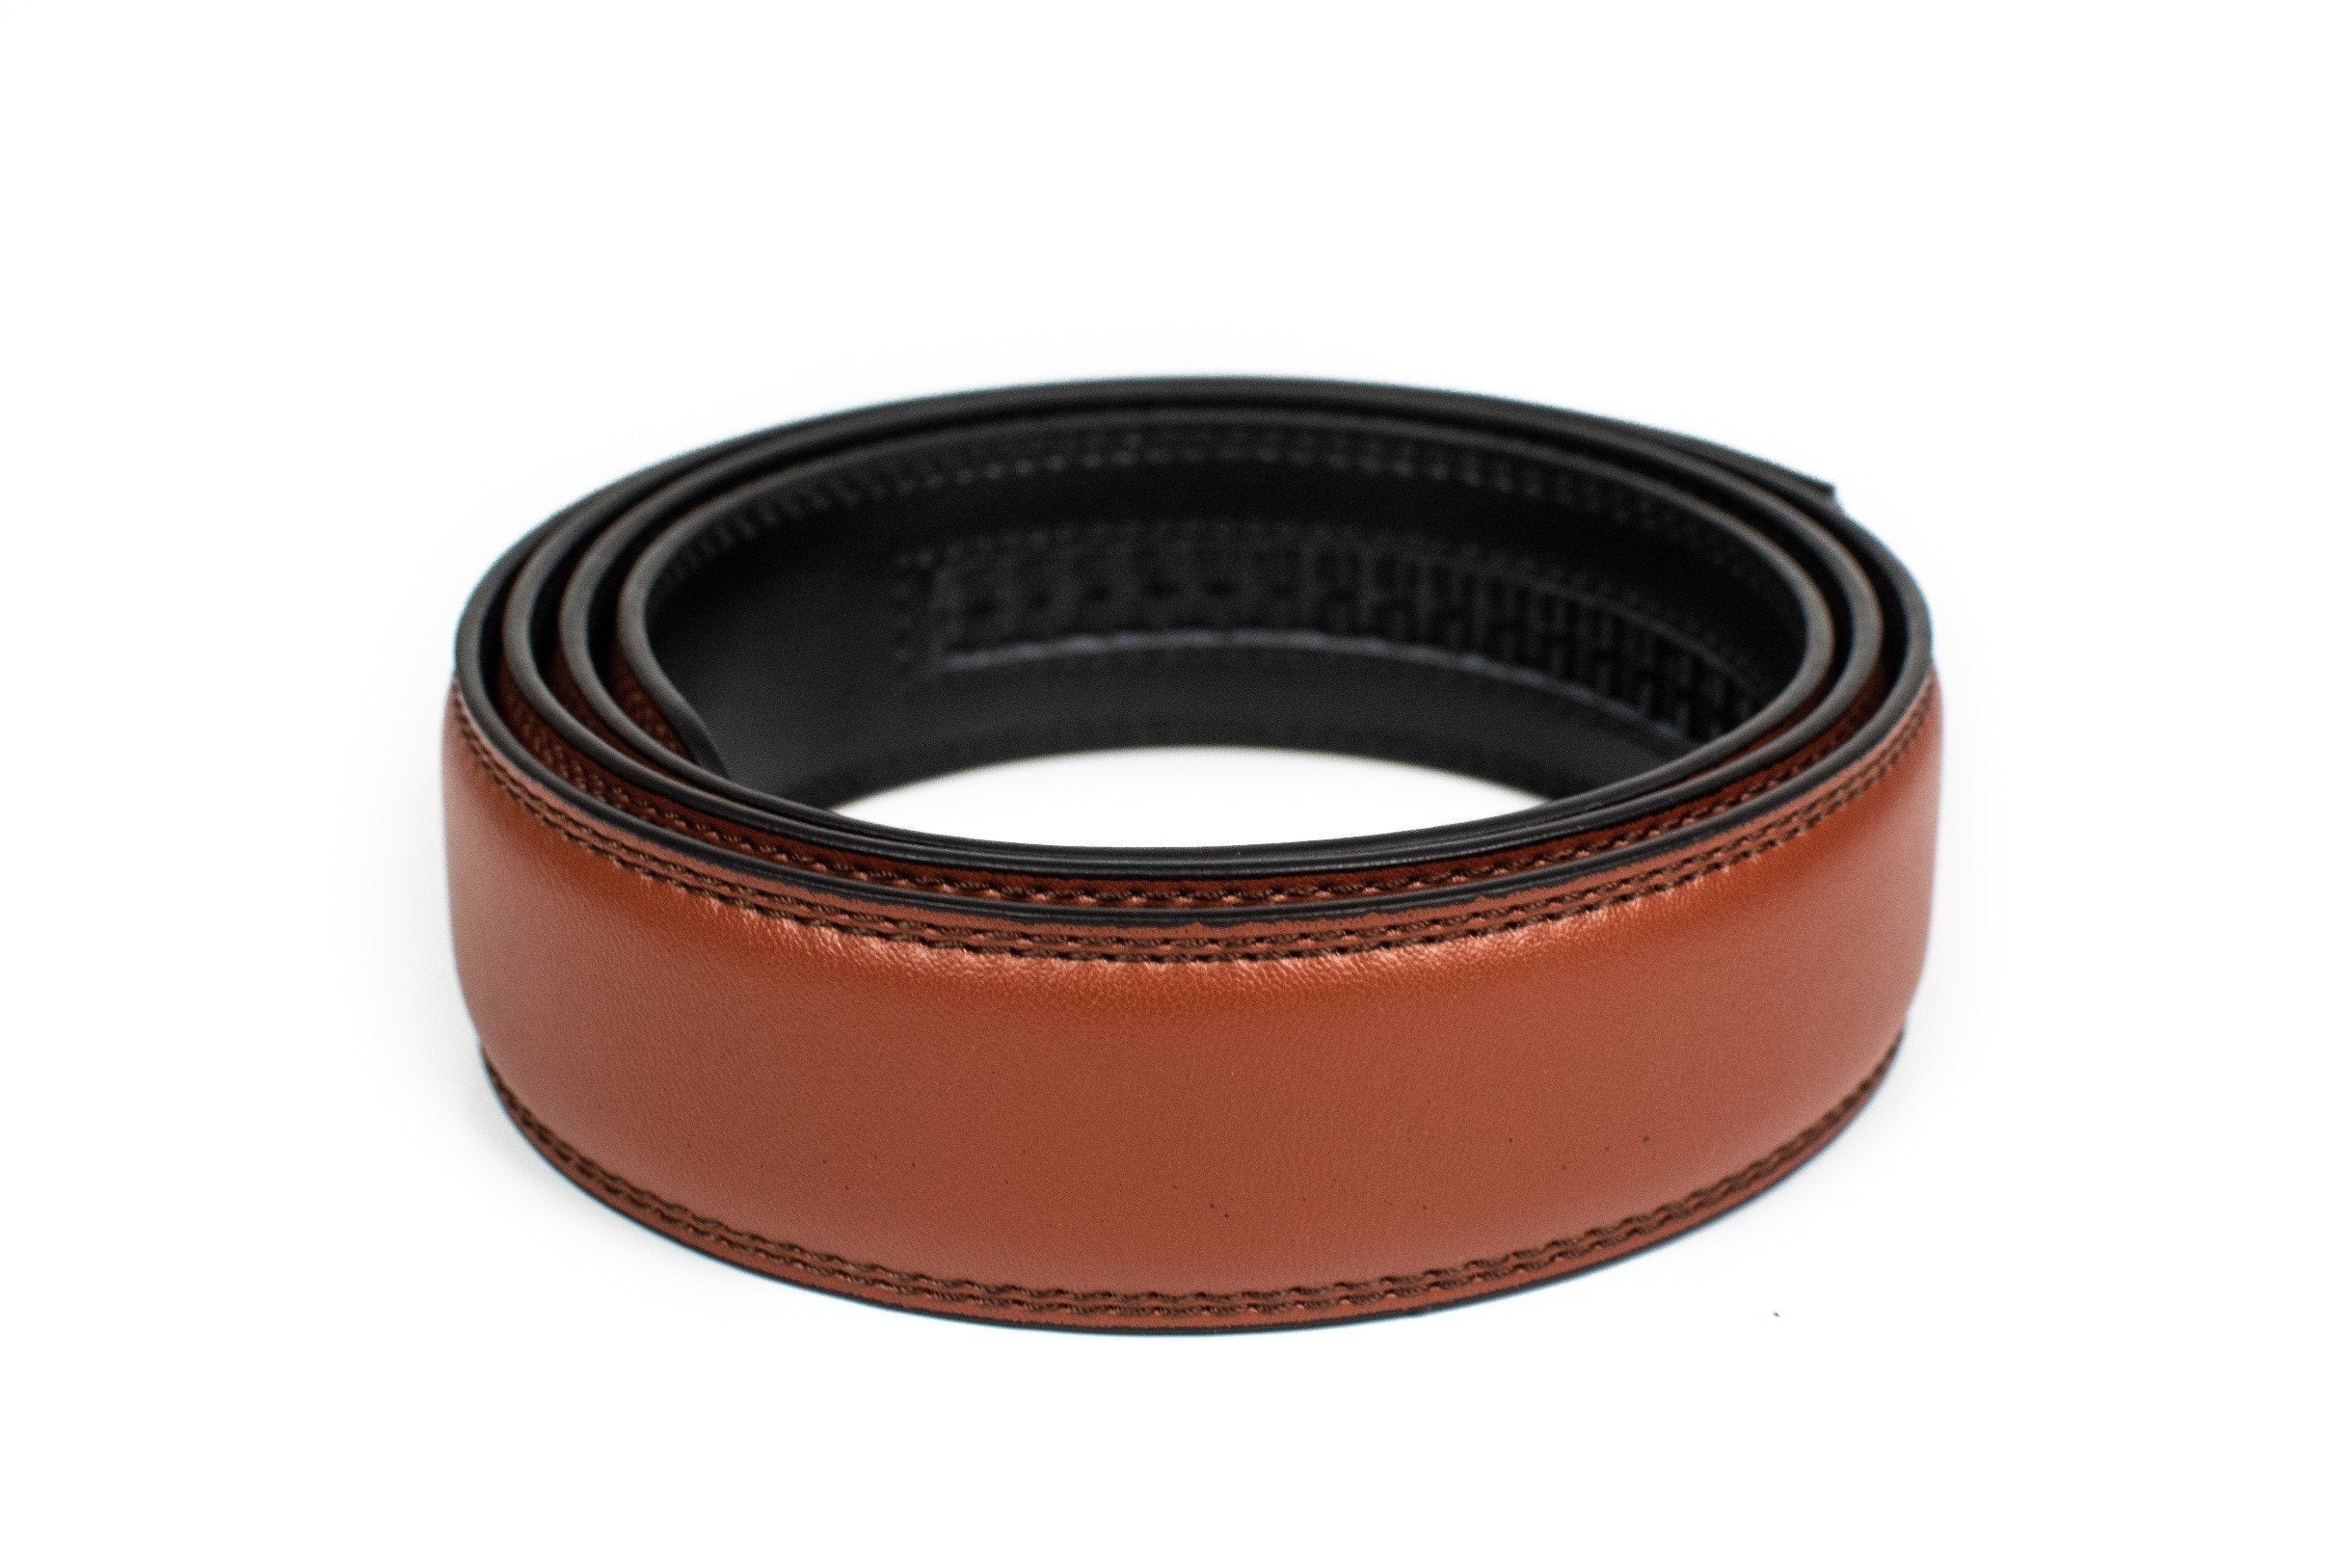 Men Adjustable Leather Belt Black Waist Casual Straps Foshion Buckle  Bussines - China Men Belt and Ratchet Belt price